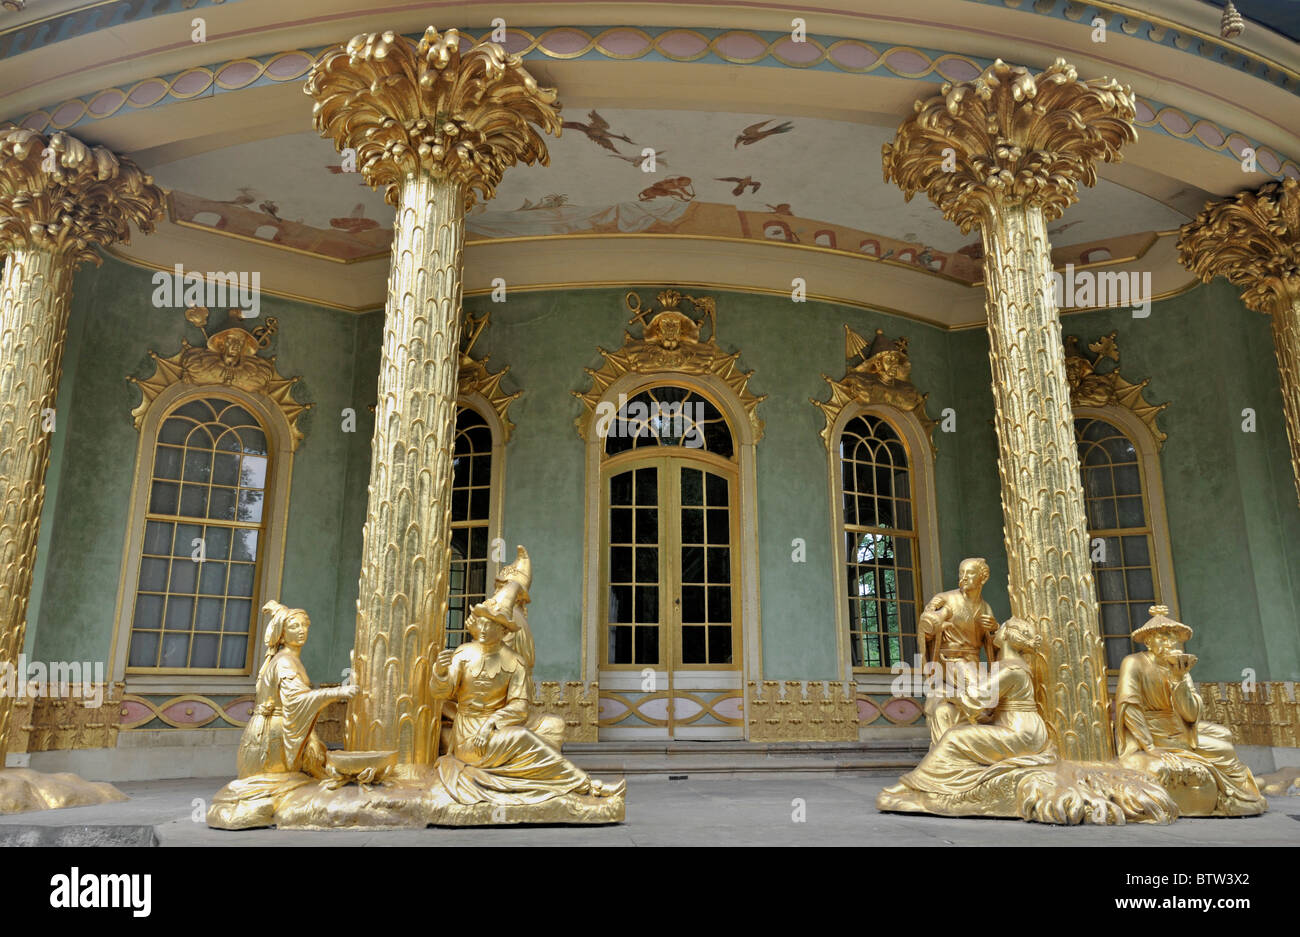 La maison chinoise au palais de Sanssouci Potsdam, Allemagne Europe, UNESCO World Heritage Banque D'Images